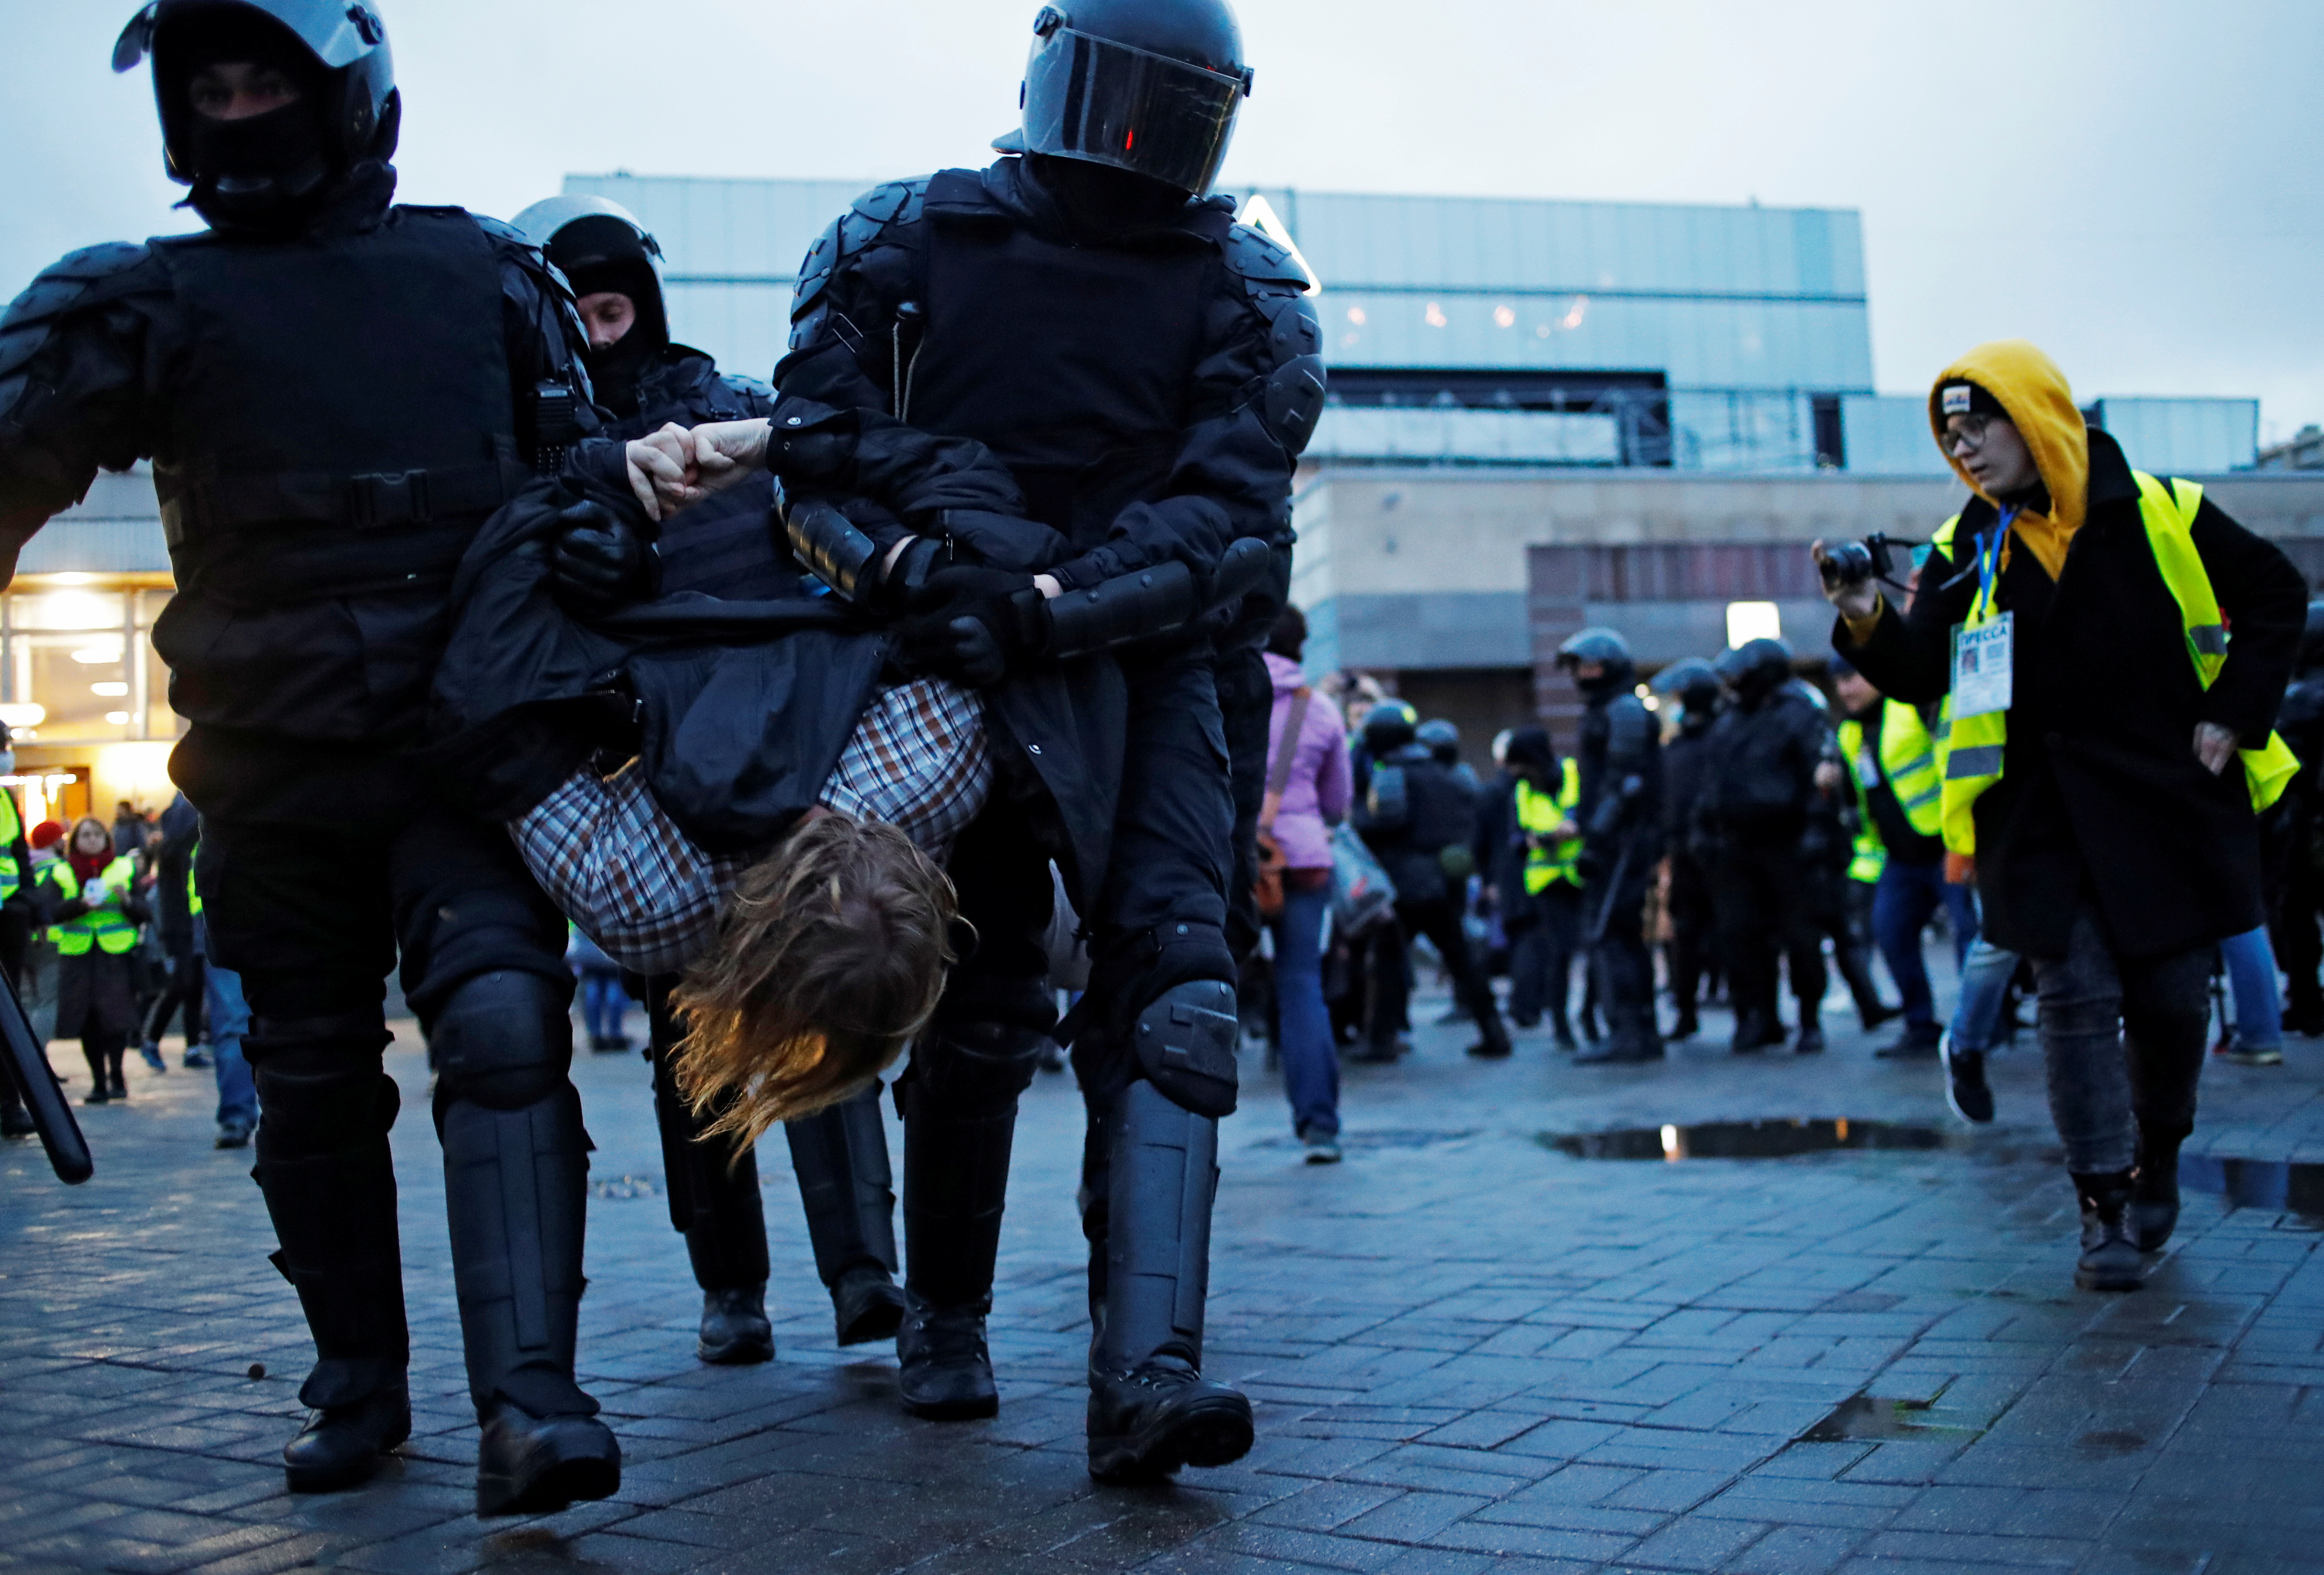 Una manifestante es secuestrado por agentes del orden durante una manifestación en apoyo al político opositor ruso encarcelado Alexei Navalny en San Petersburgo, Rusia, el 21 de abril de 2021. REUTERS / Anton Vaganov